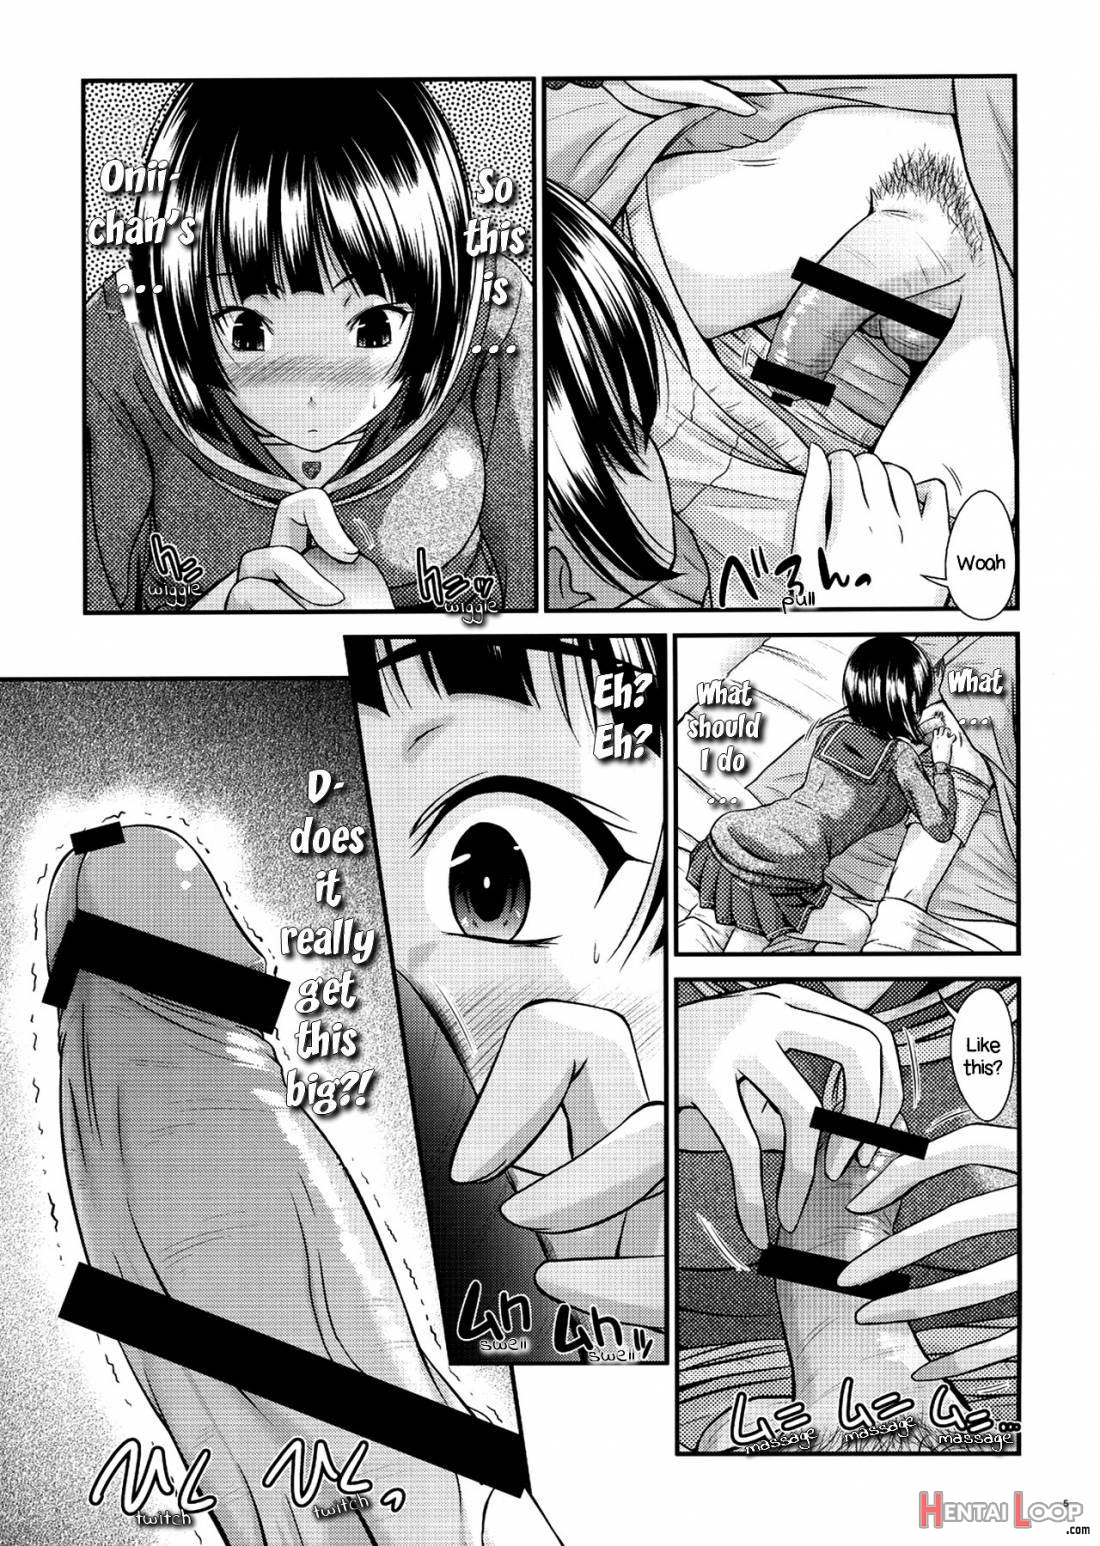 Suguha No Himitsu page 4